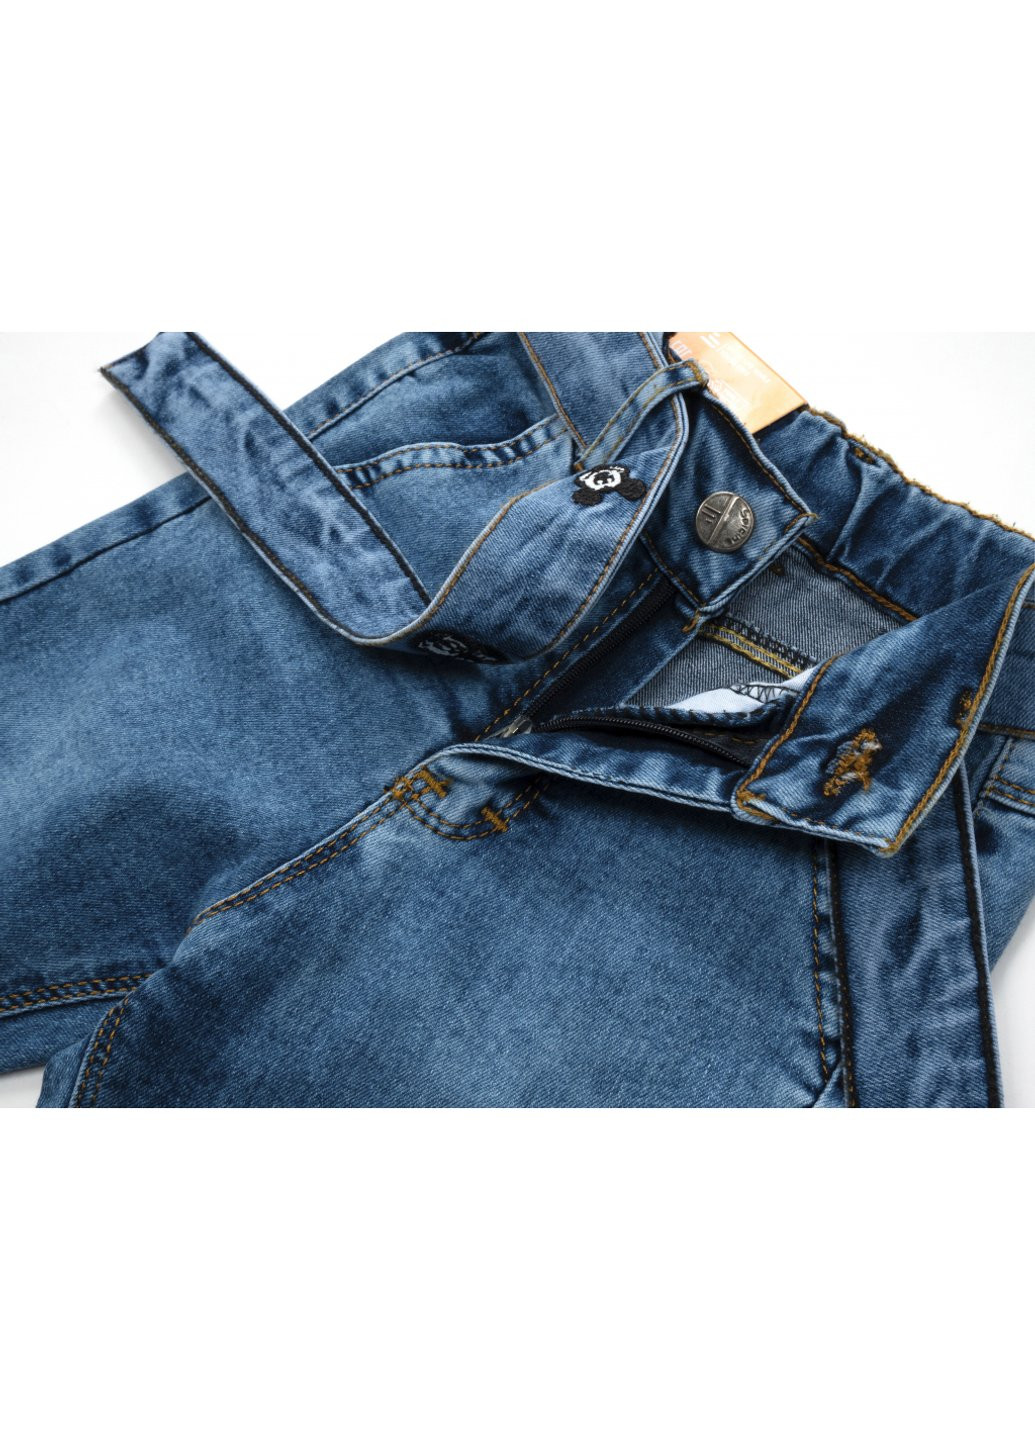 Голубые демисезонные джинсы с поясом (58162-116g-blue) Sercino